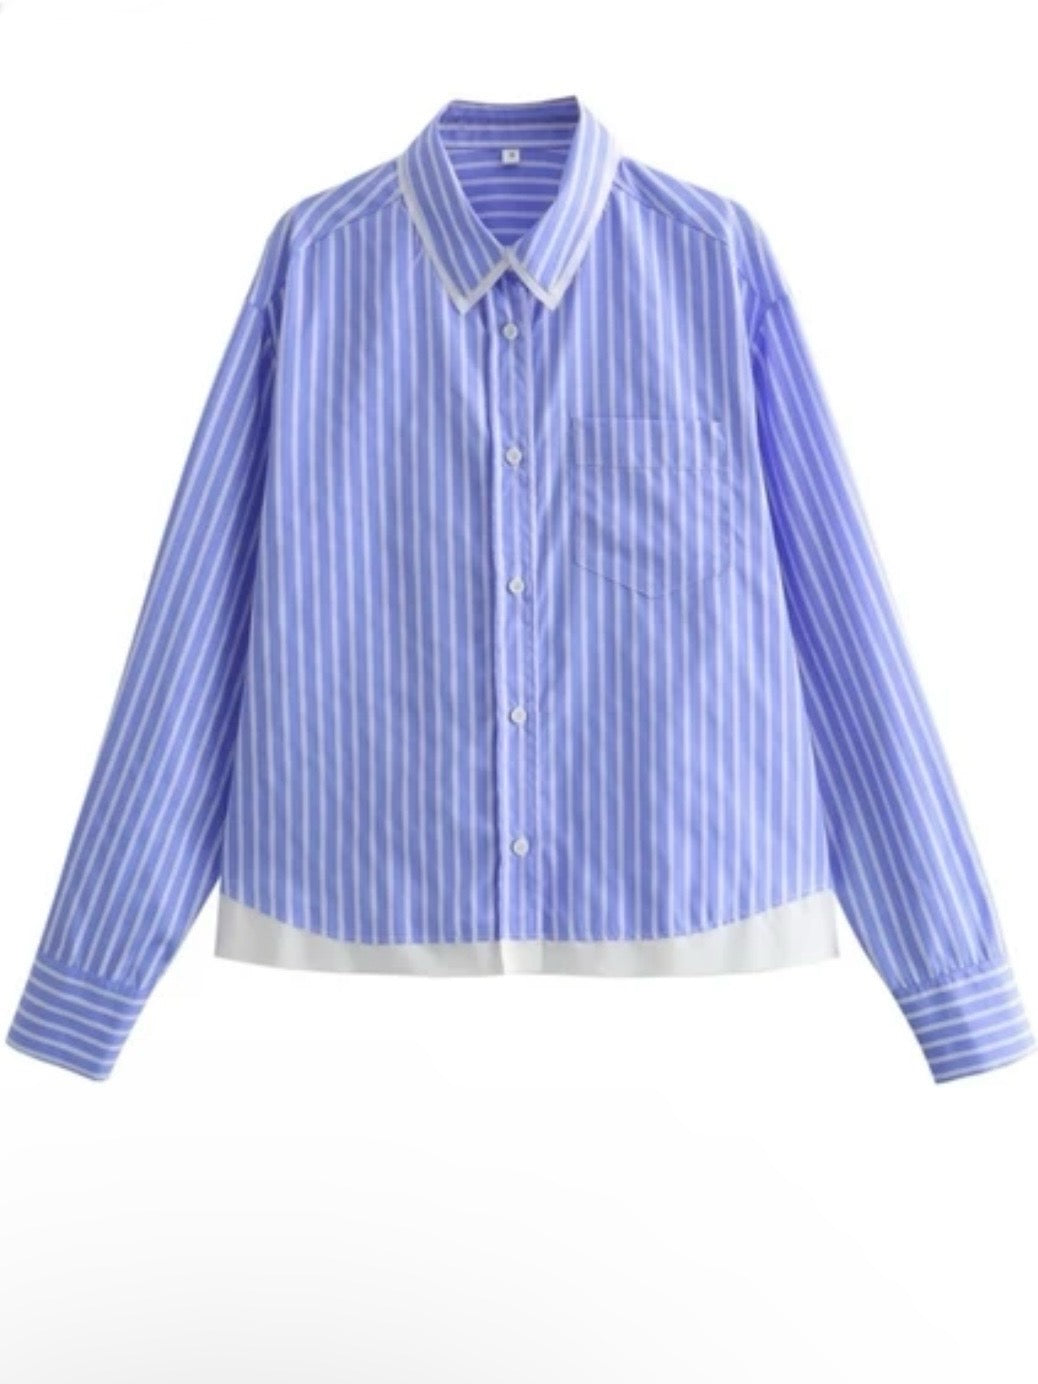 Light blue striped front shirt